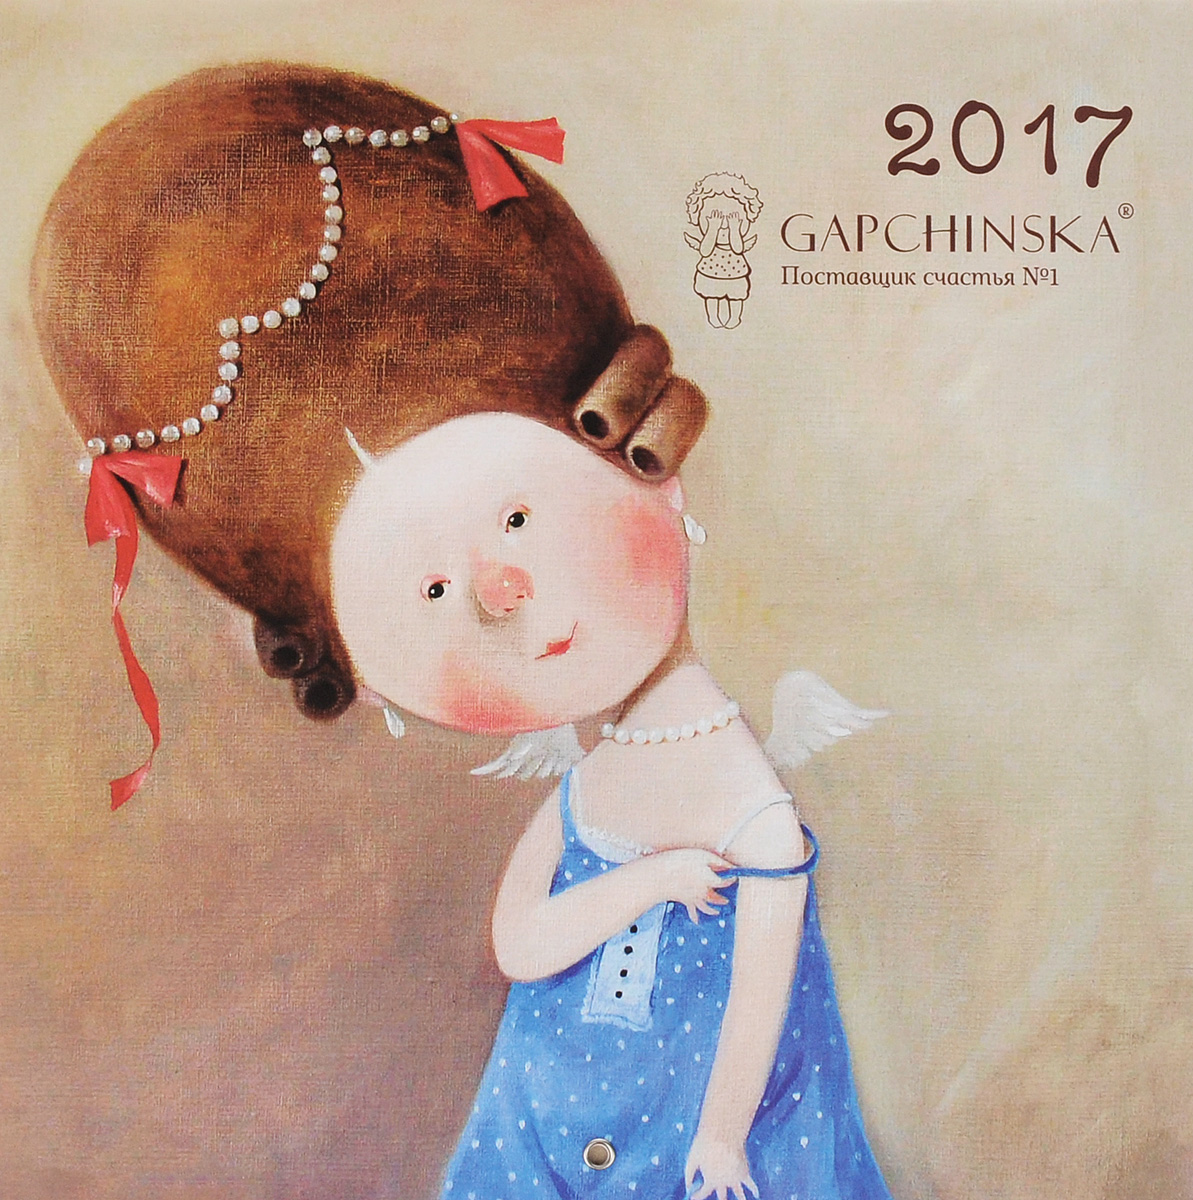 Календарь 2017 (на скрепке). Gapchinska. Поставщик счастья №1